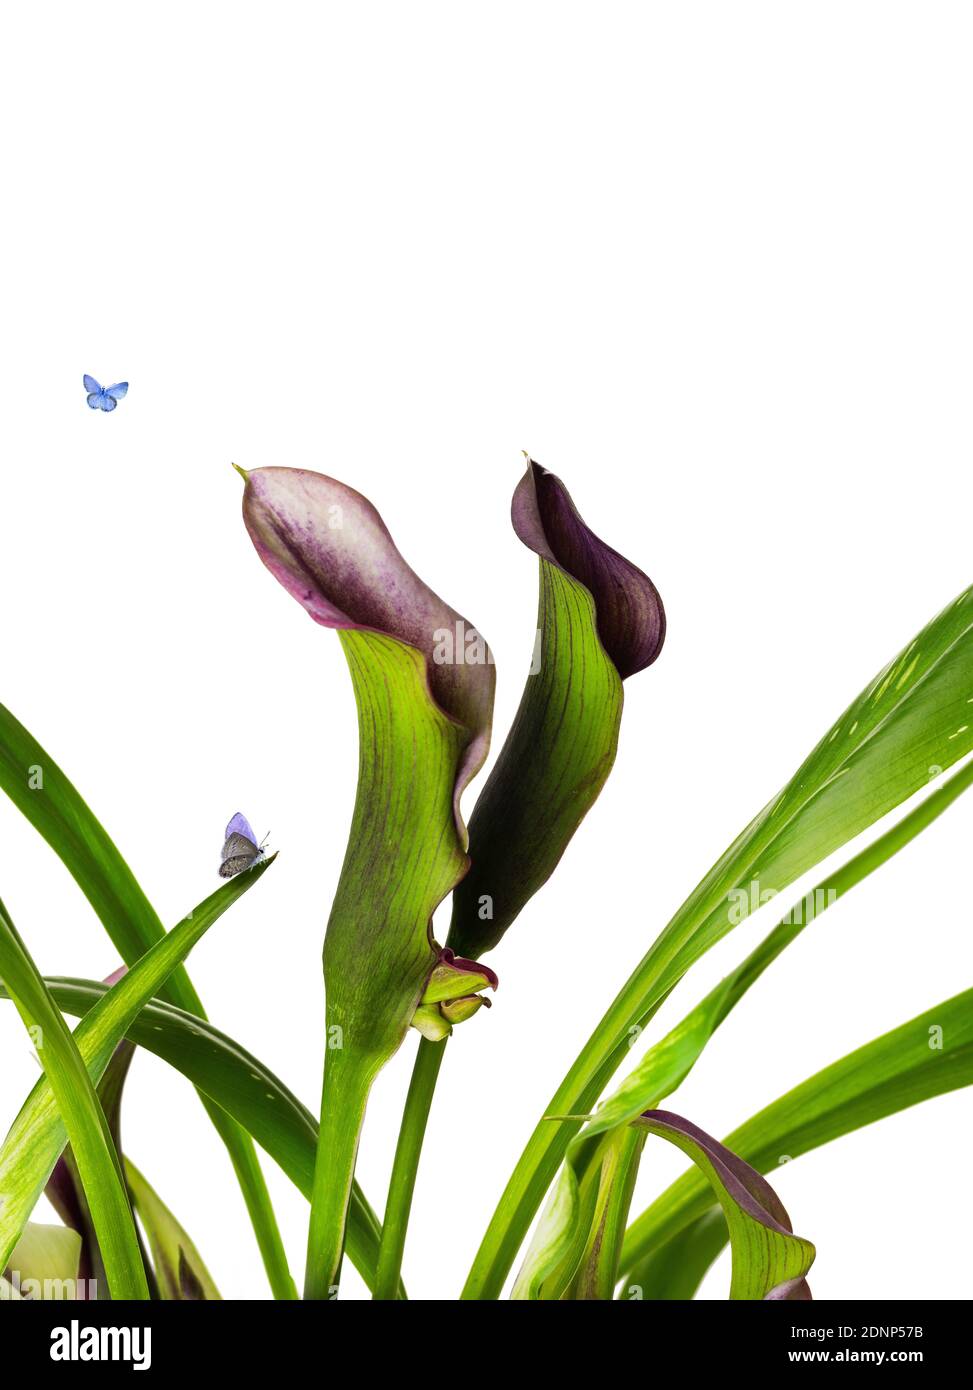 Schöne Klumpen von Calla Lily lila und rosa Blüten mit Gruppe blaue Schmetterling Flügel lebendige natürliche zeitgenössische Design isoliert auf Weißer Hintergrund Stockfoto